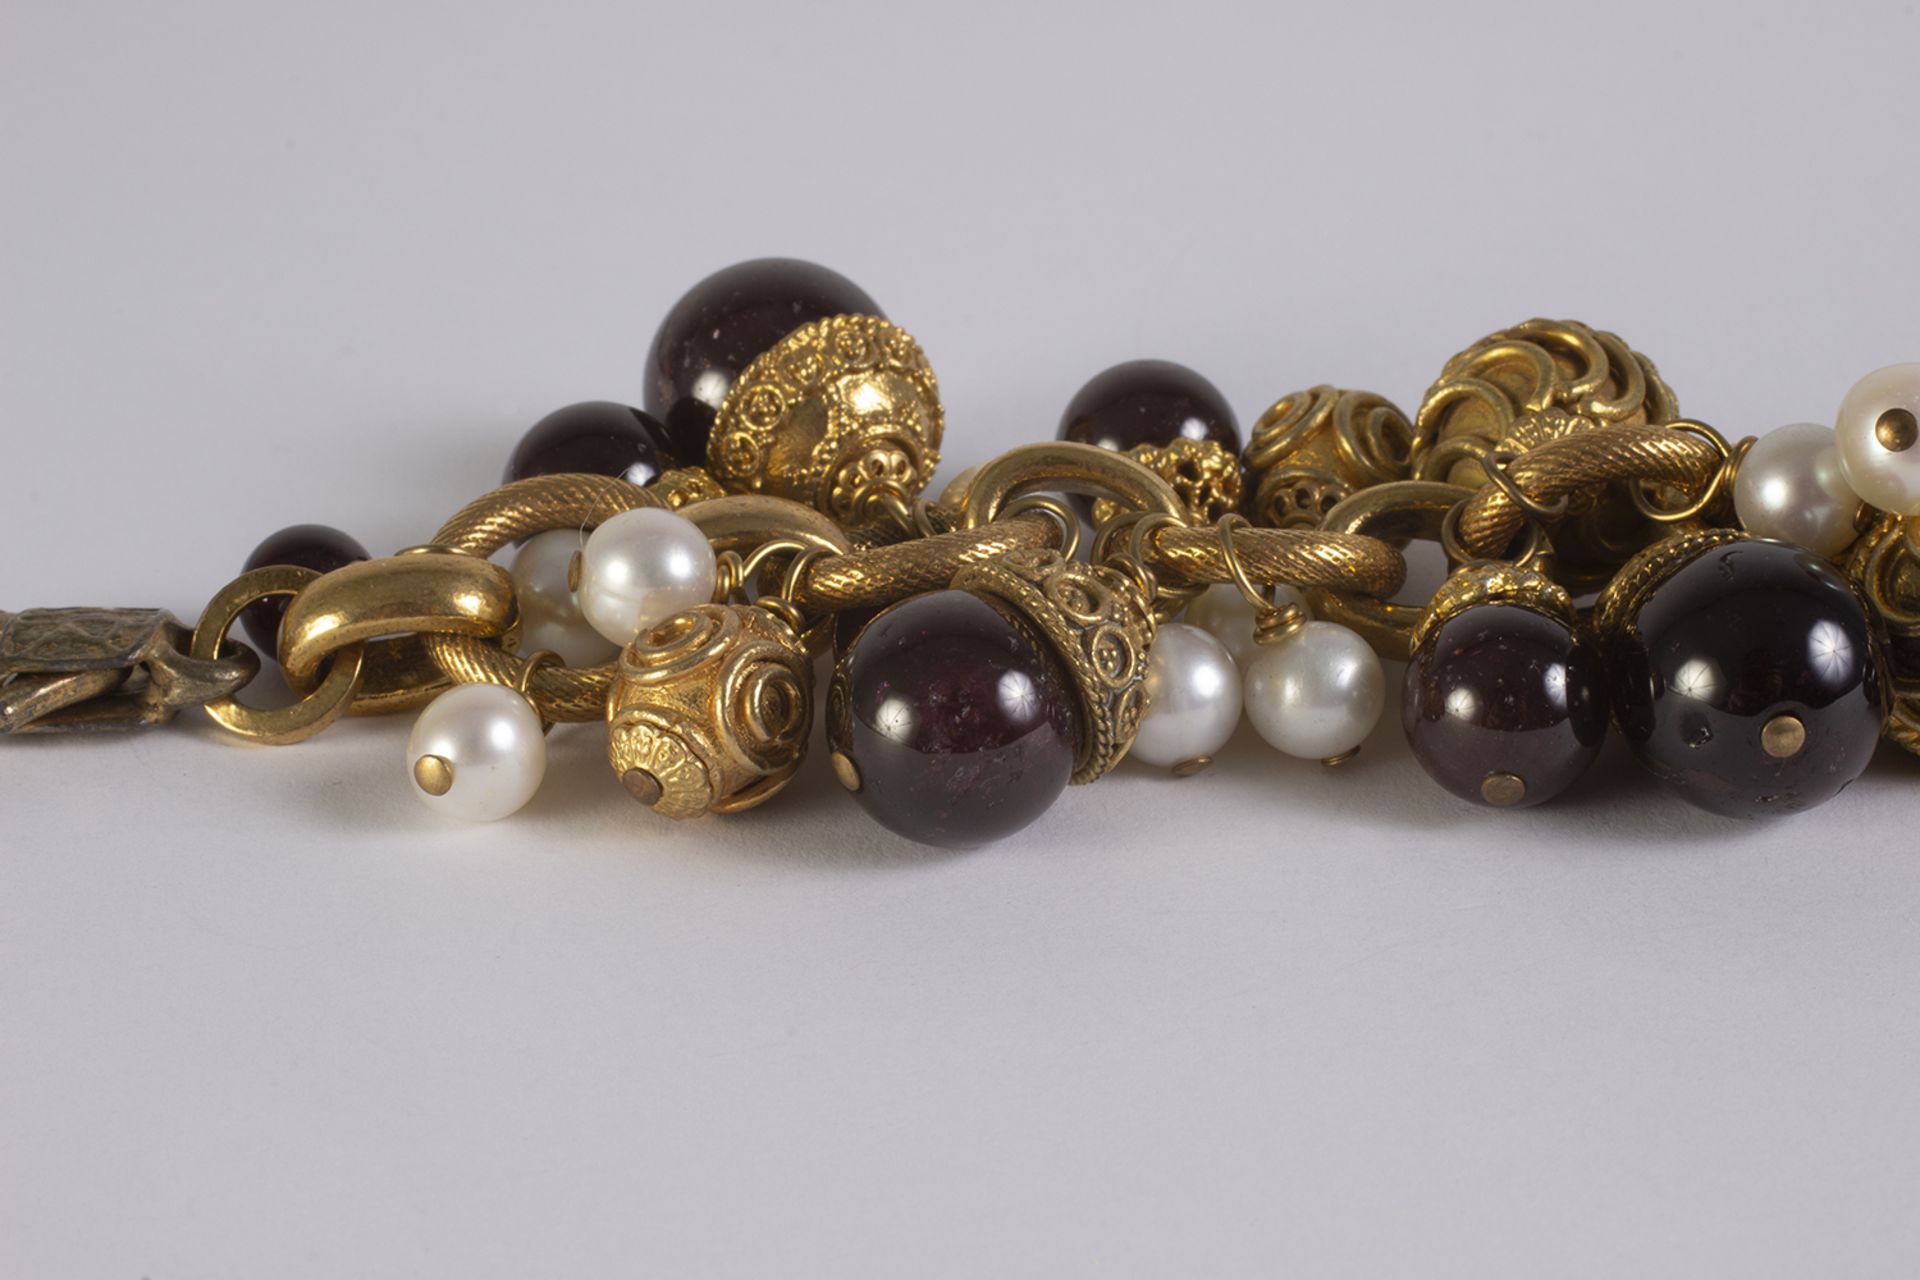 Pulsera en metal dorado con motivos circulares labrados, perlas cultivadas y cristales esféricos de - Image 2 of 3